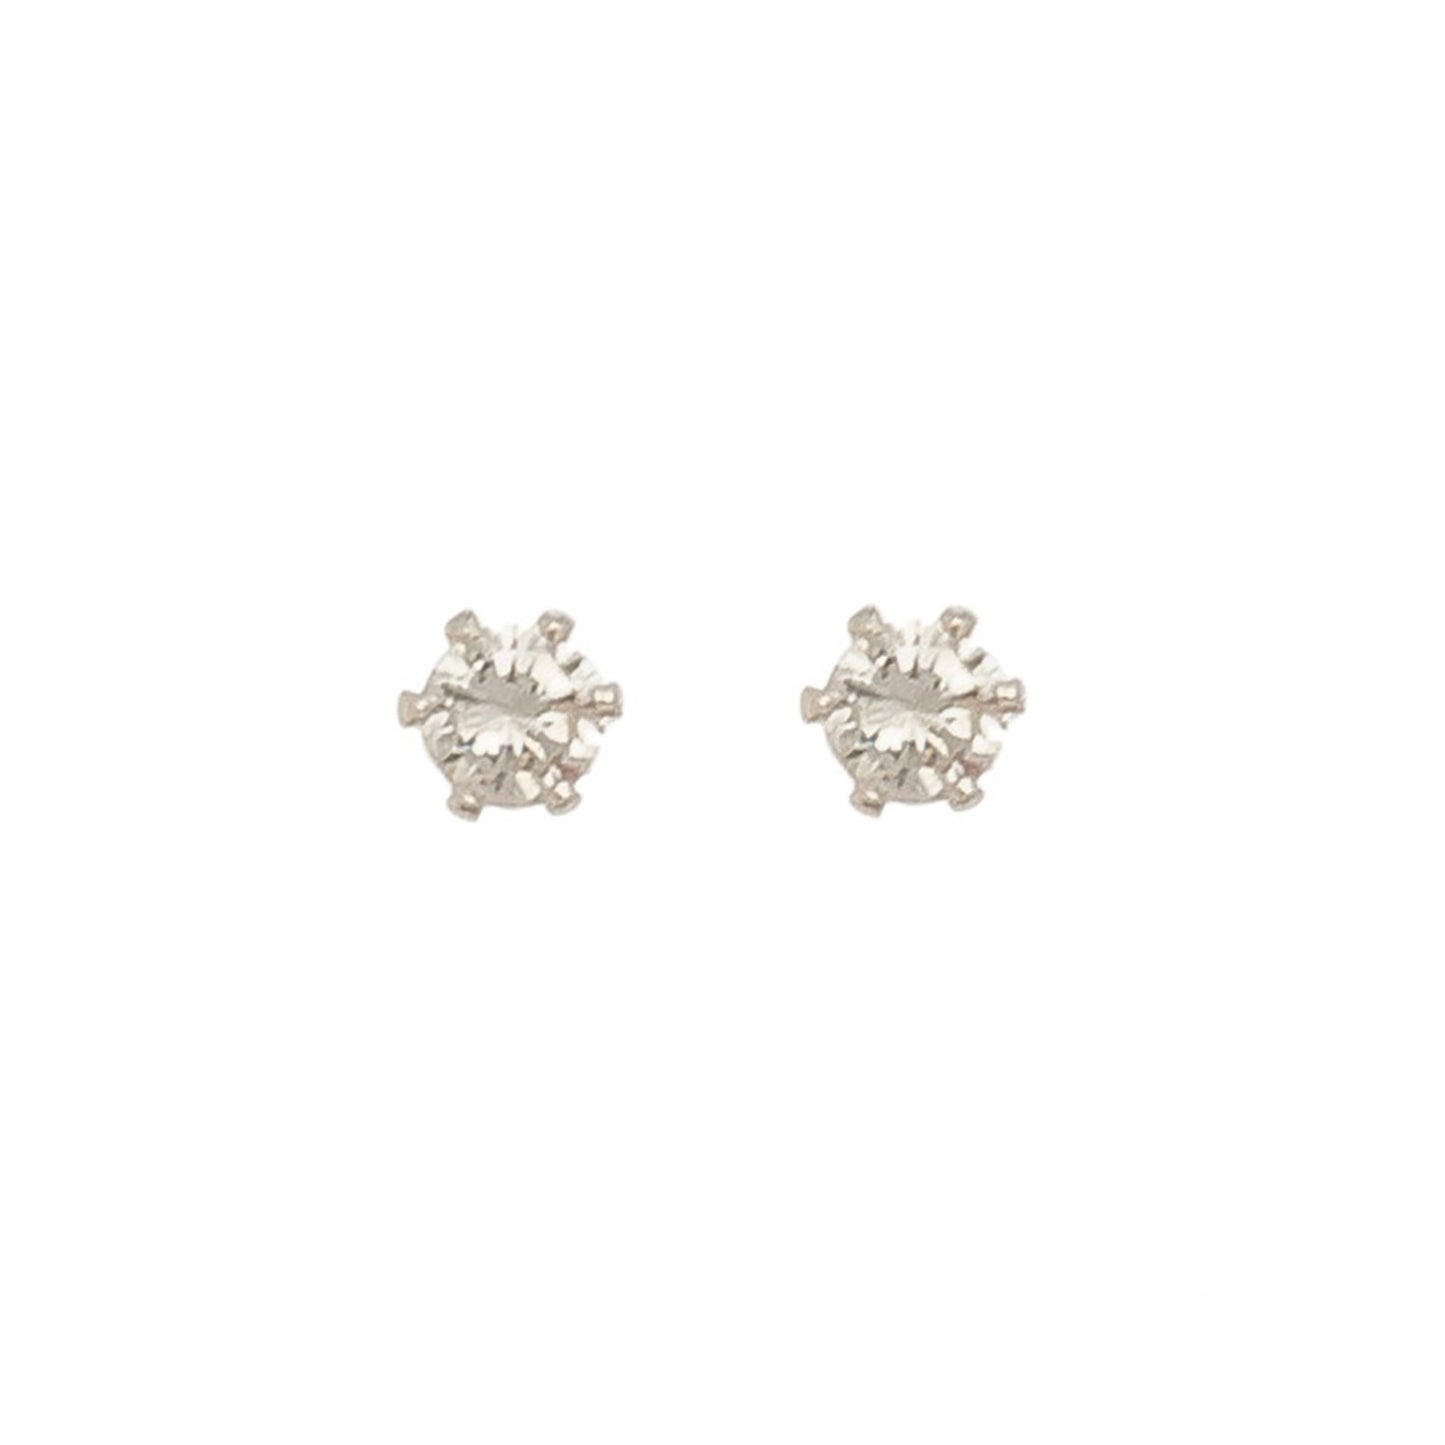 3mm Cubic Zirconia Stud Earrings